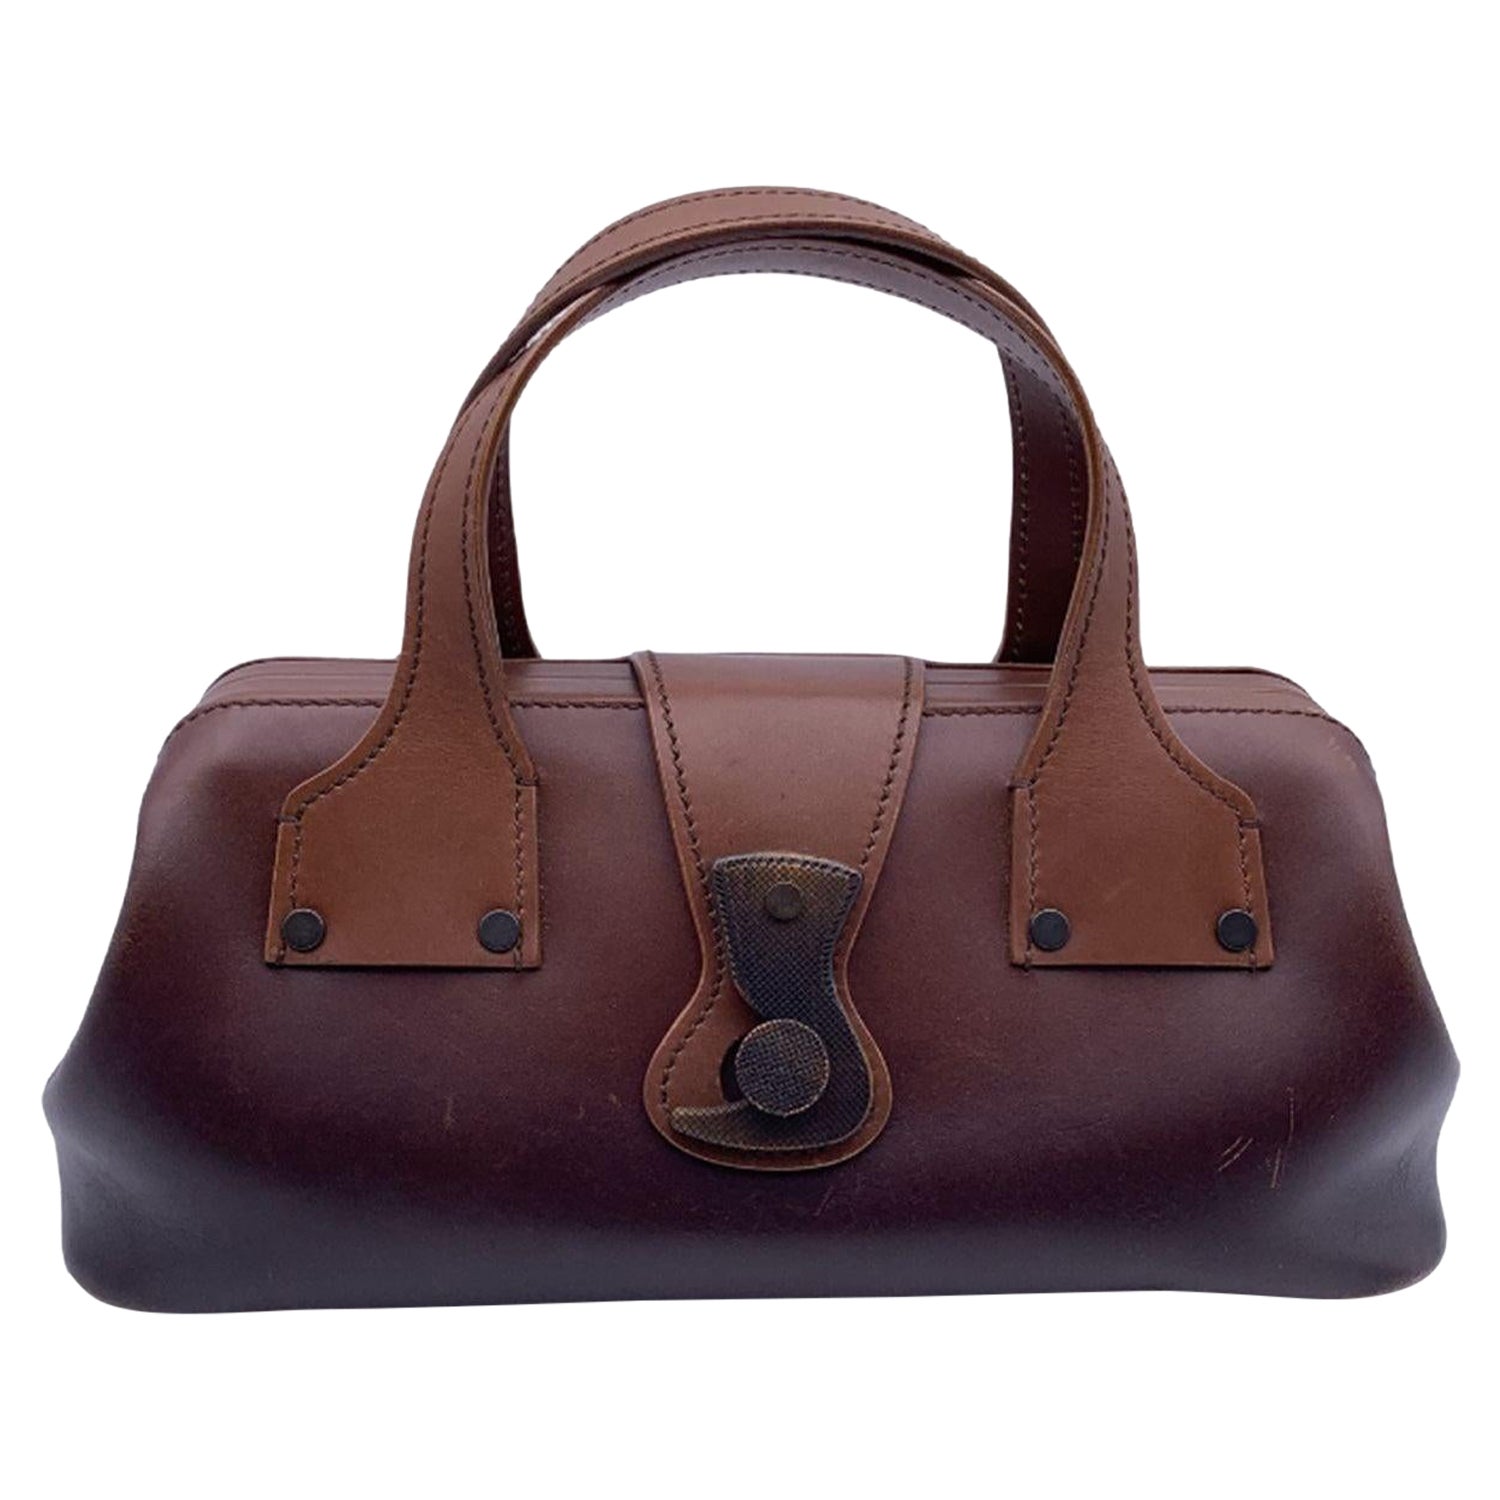 Gucci Brown Leather Wood Hook Closure Handbag Satchel Bag For Sale